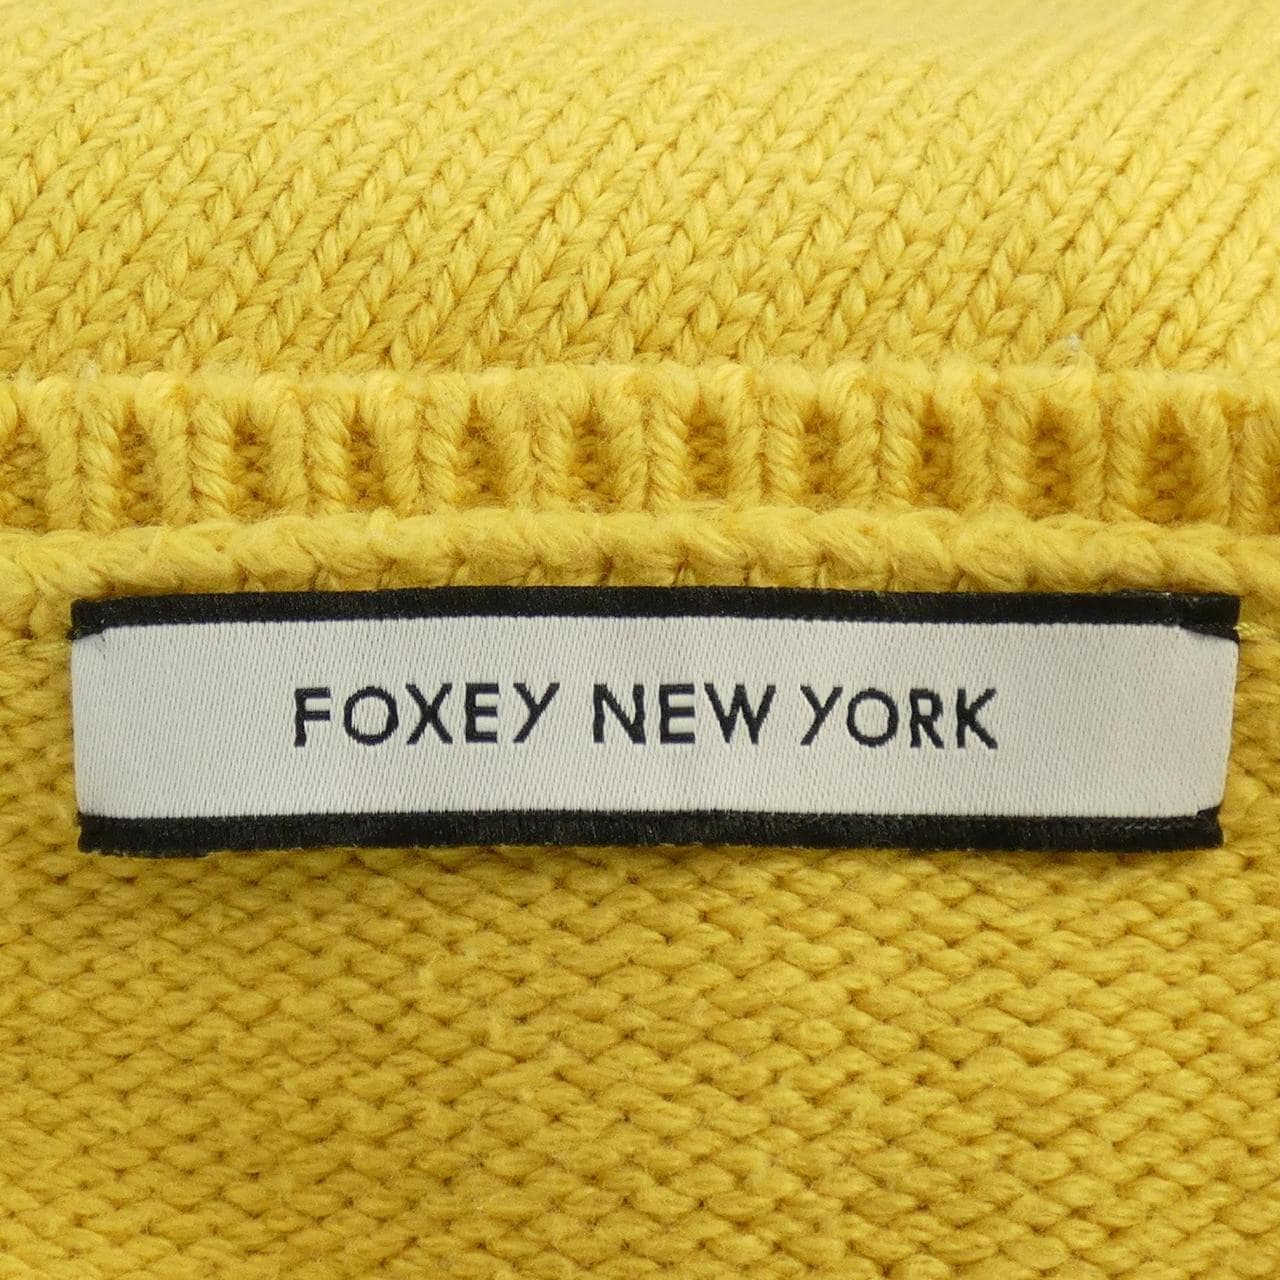 福西纽约FOXEY NEW YORK针织衫